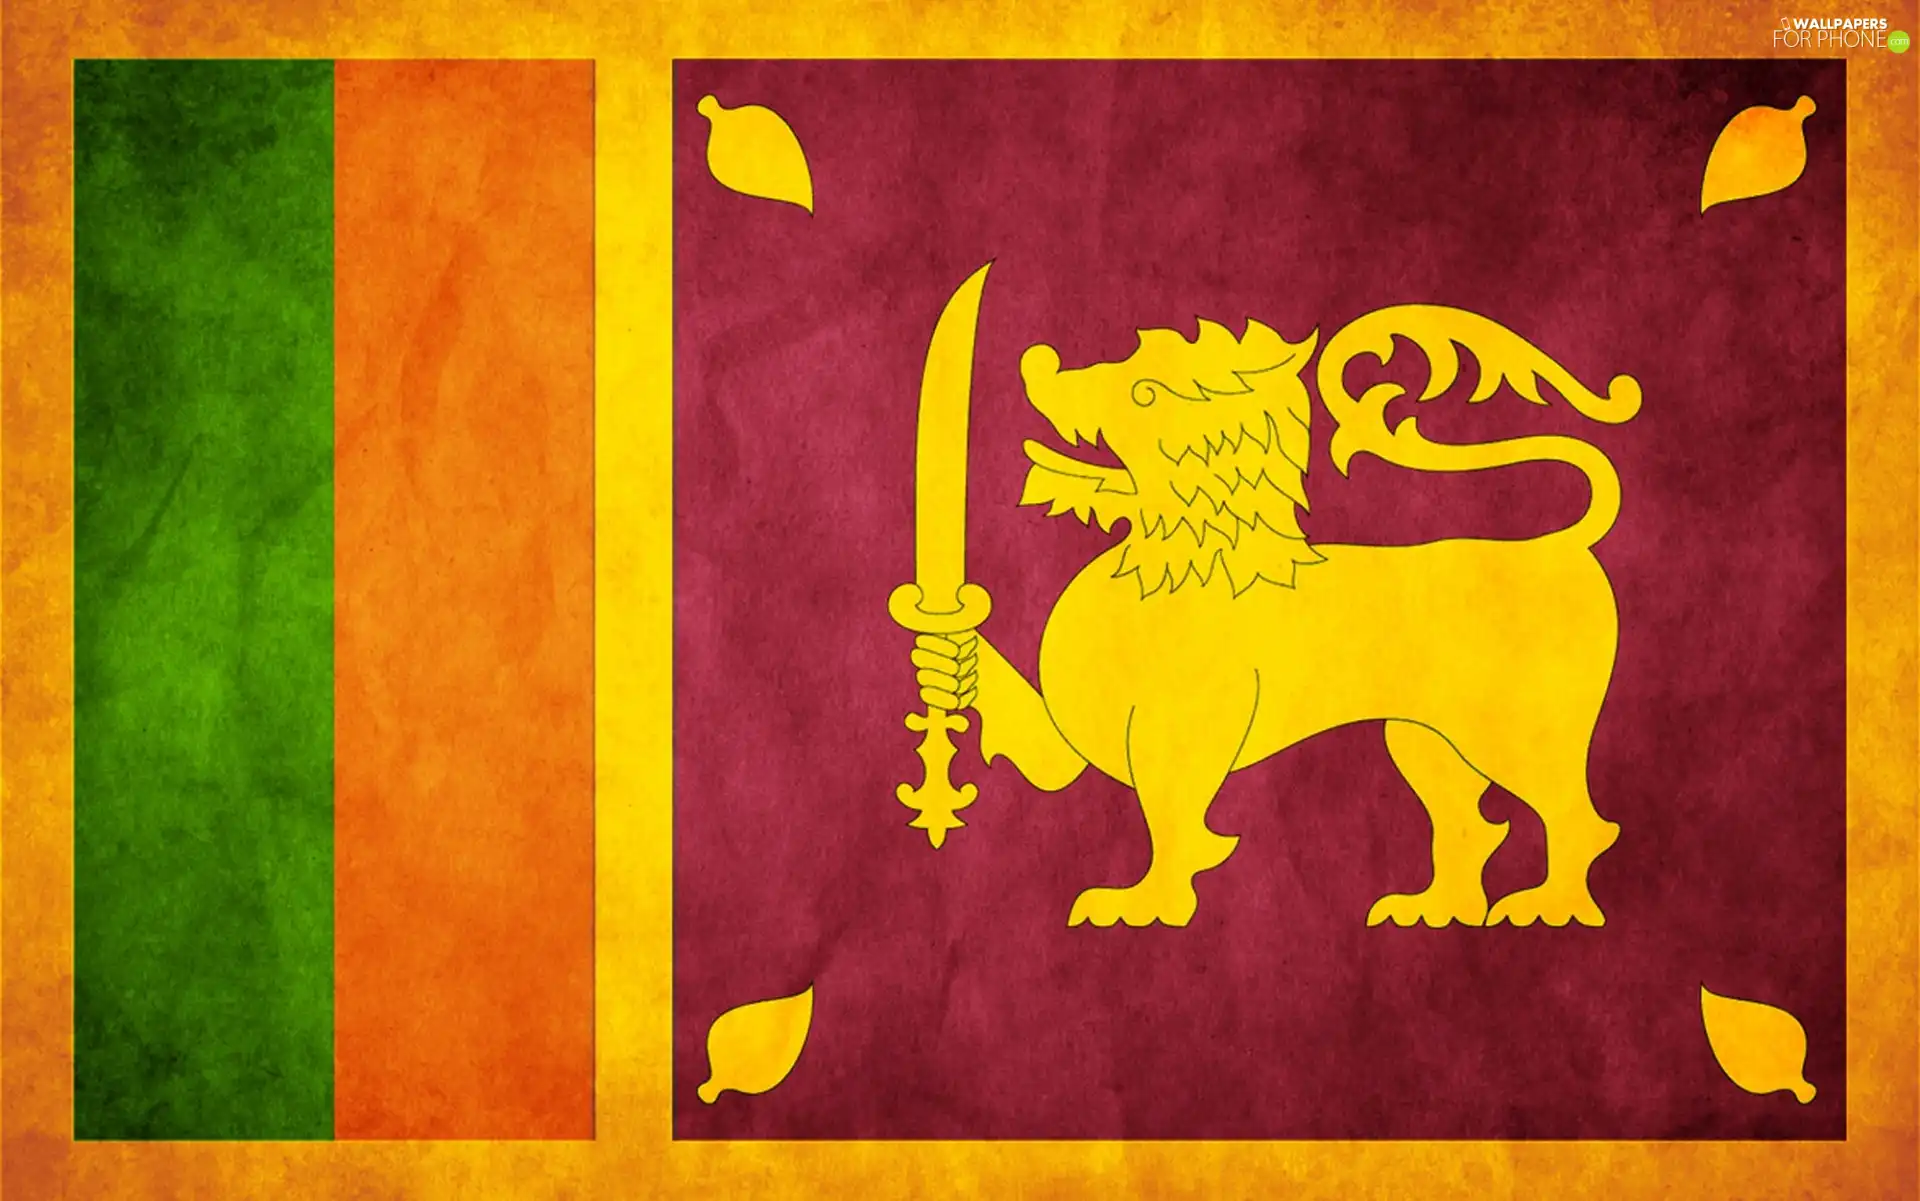 Sir Lanka, flag, Member